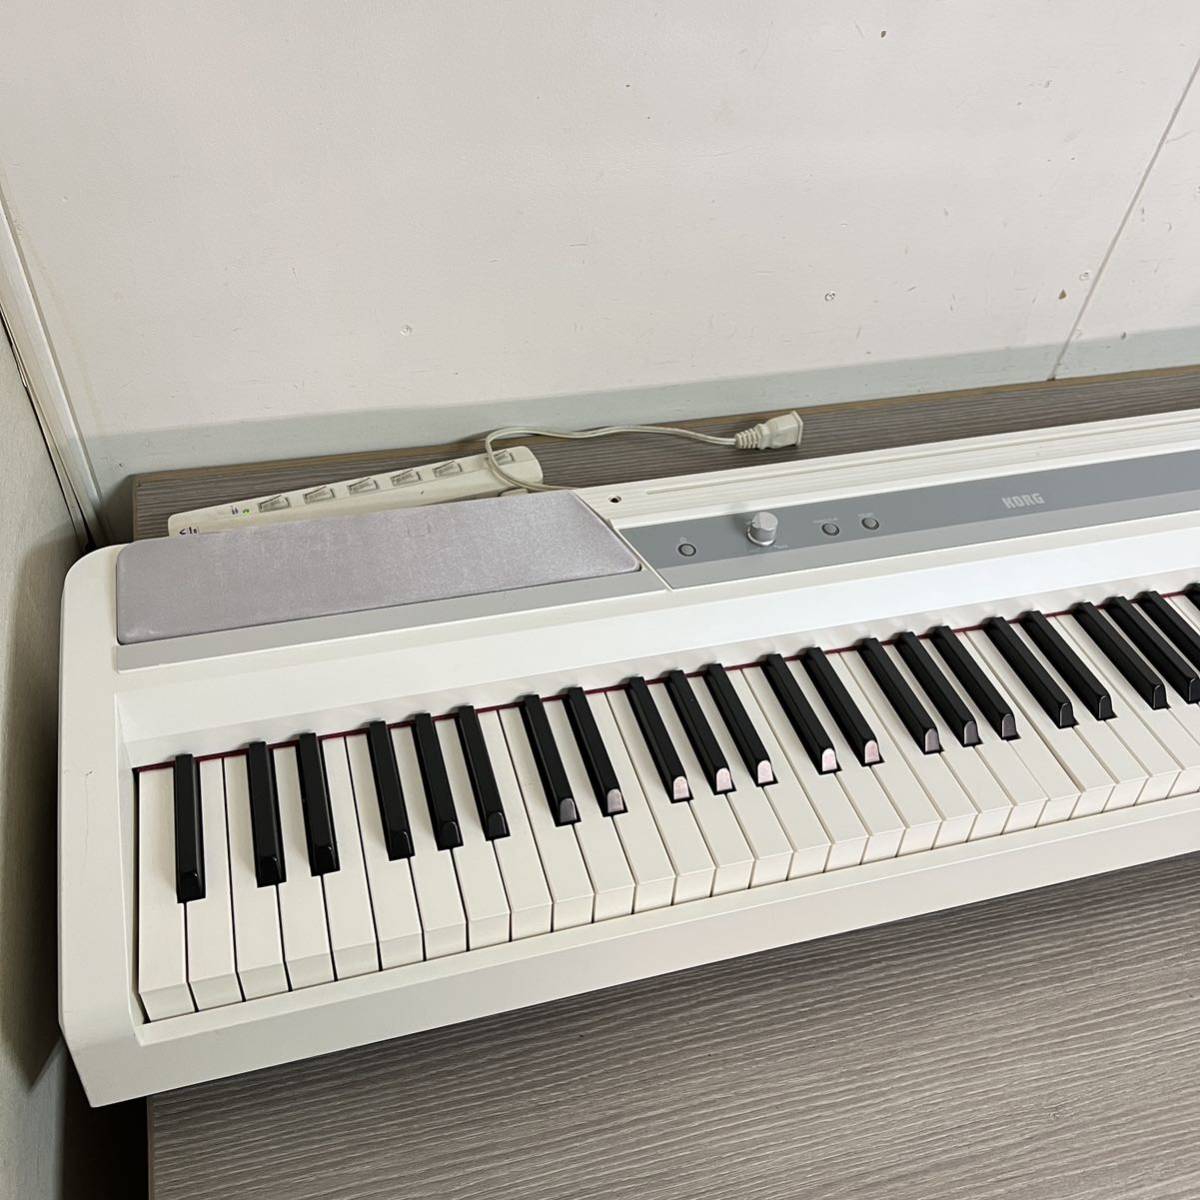 B1642 コルグKORG SP-170S 電子ピアノ 88鍵 ホワイトグレー_画像4